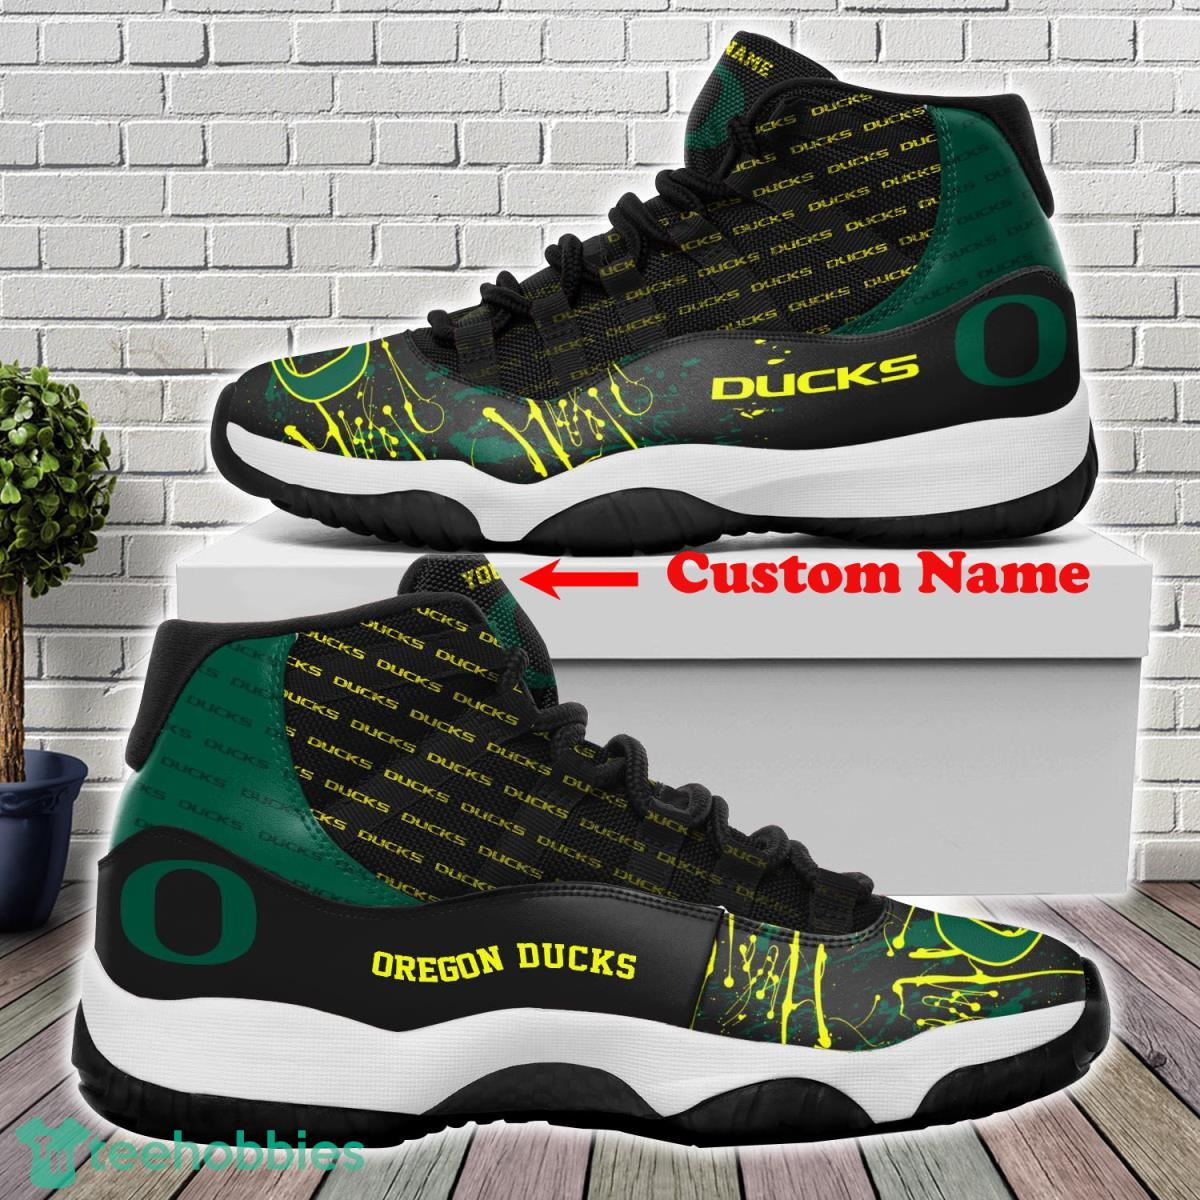 Oregon Ducks Custom Name Air Jordan 11 Sneakers For Fans Product Photo 1